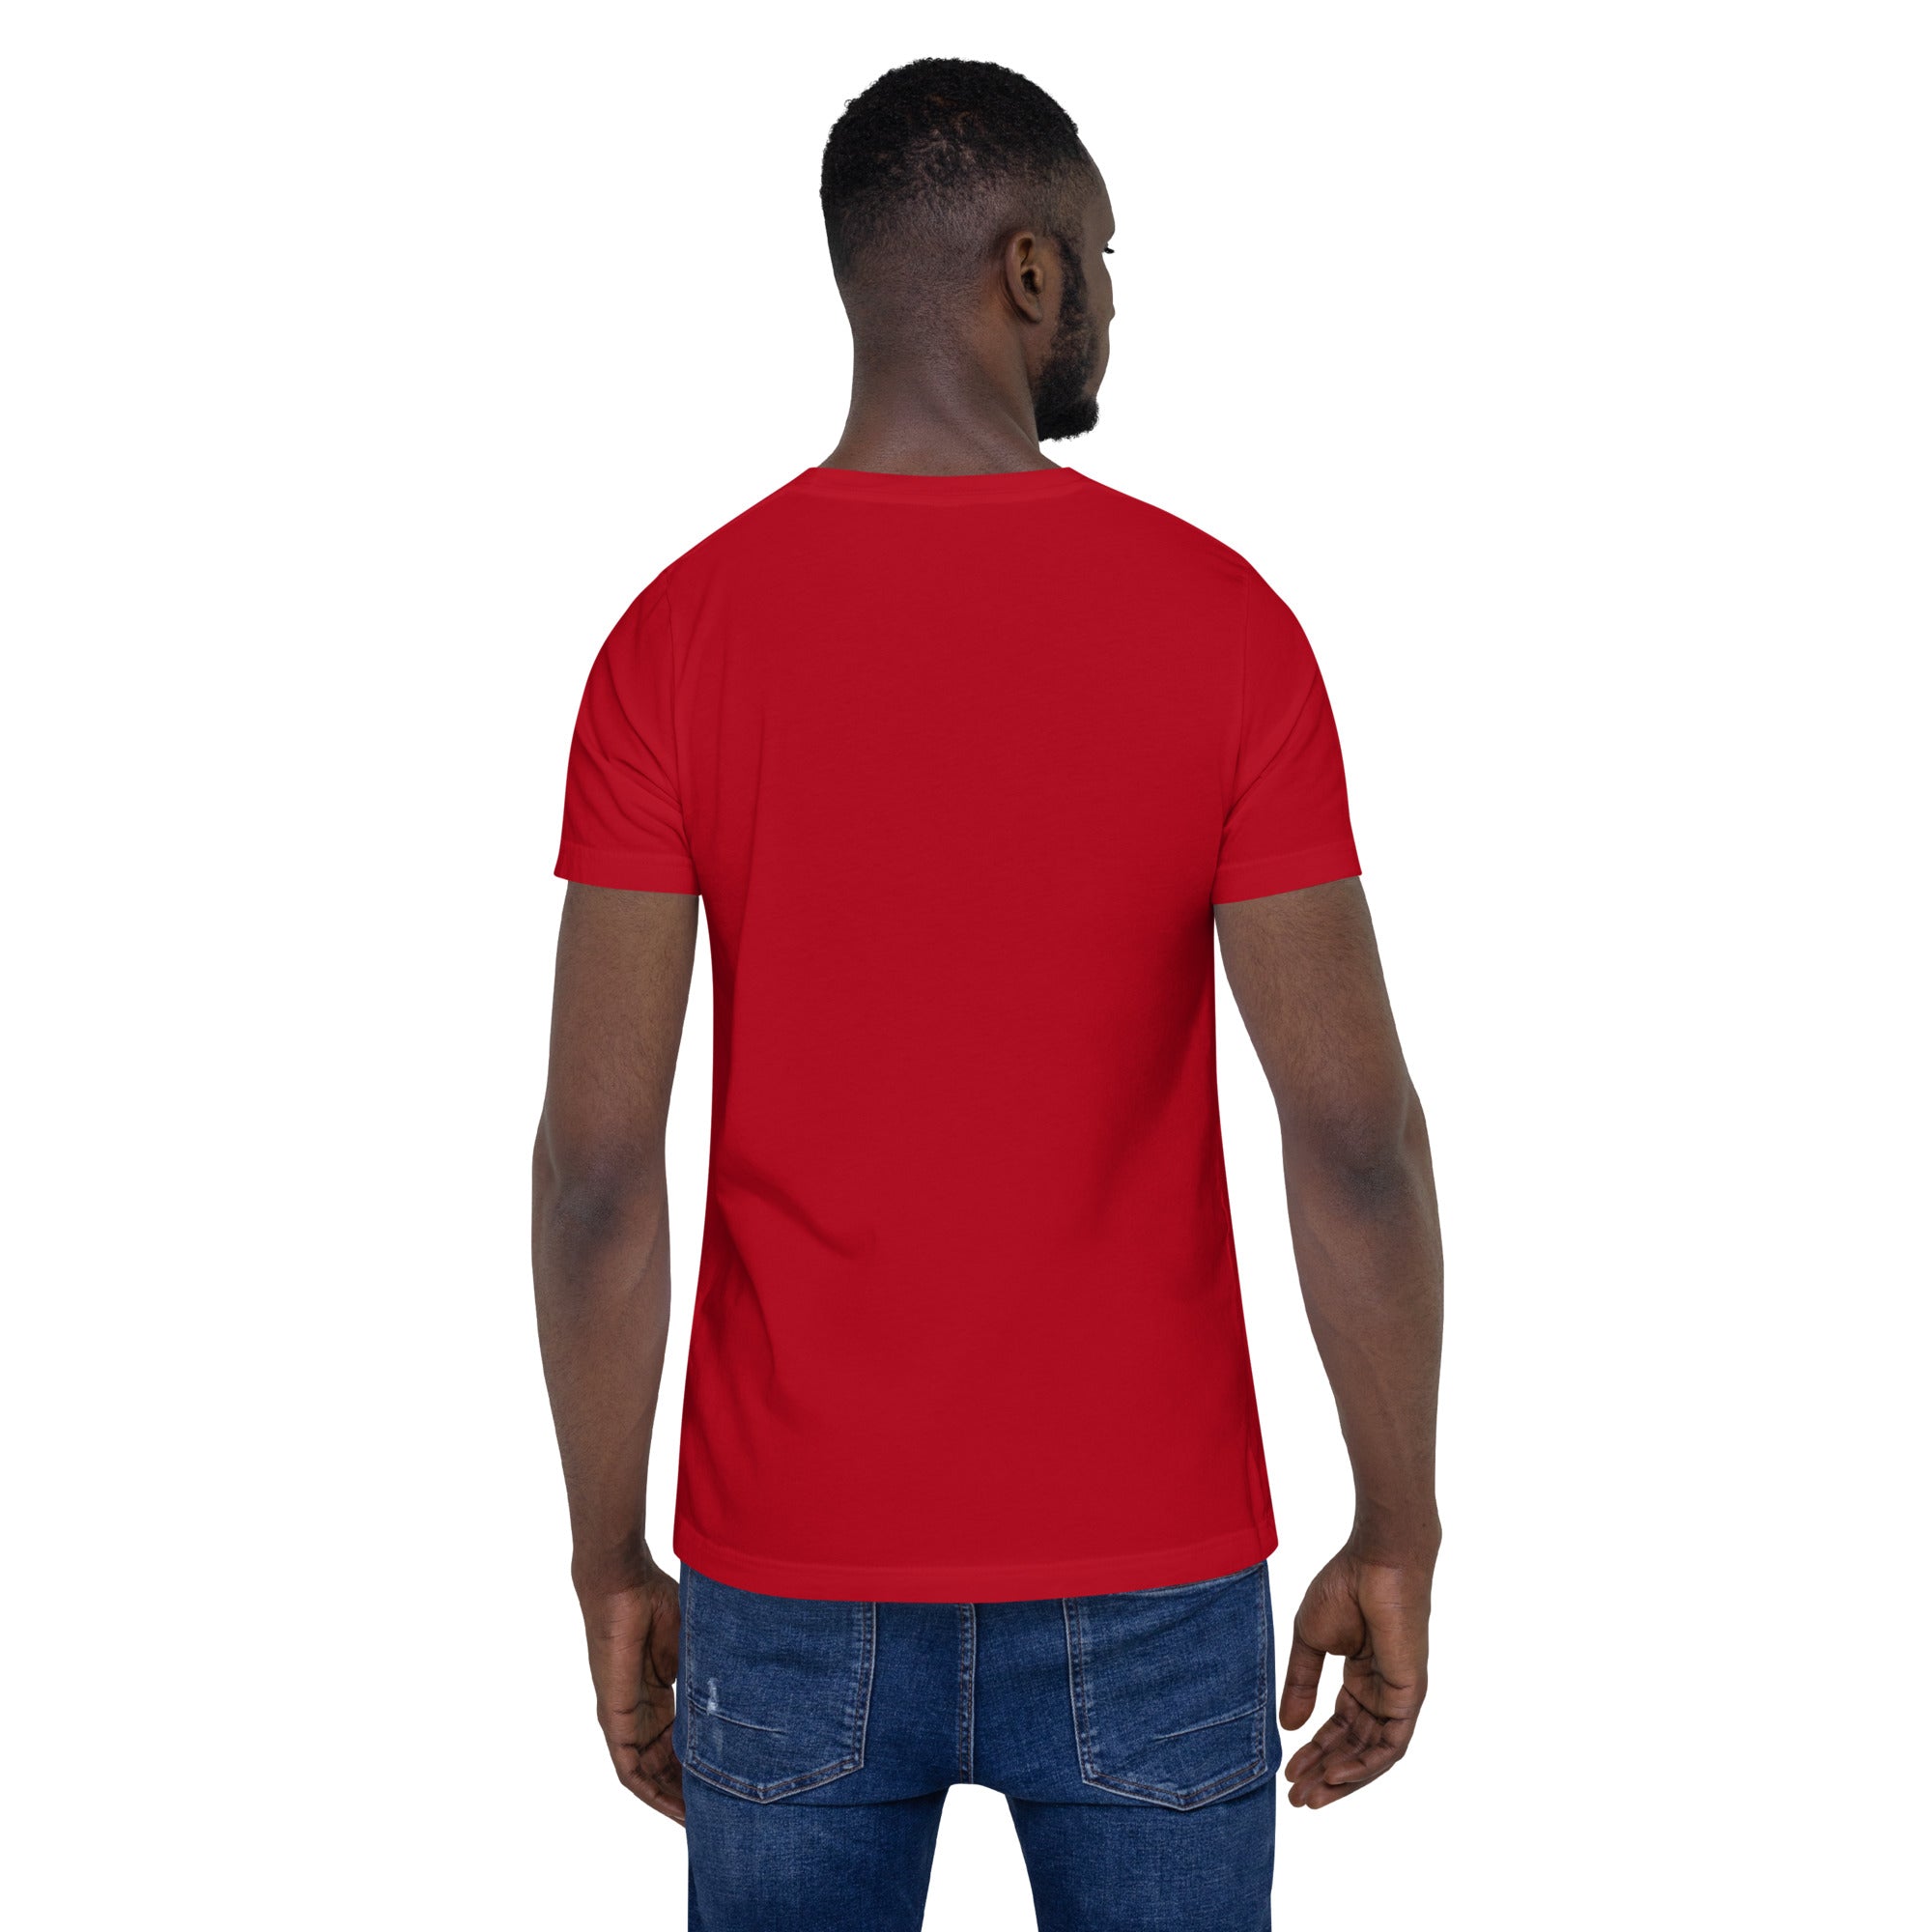 BG Logo White - Red Unisex t-shirt